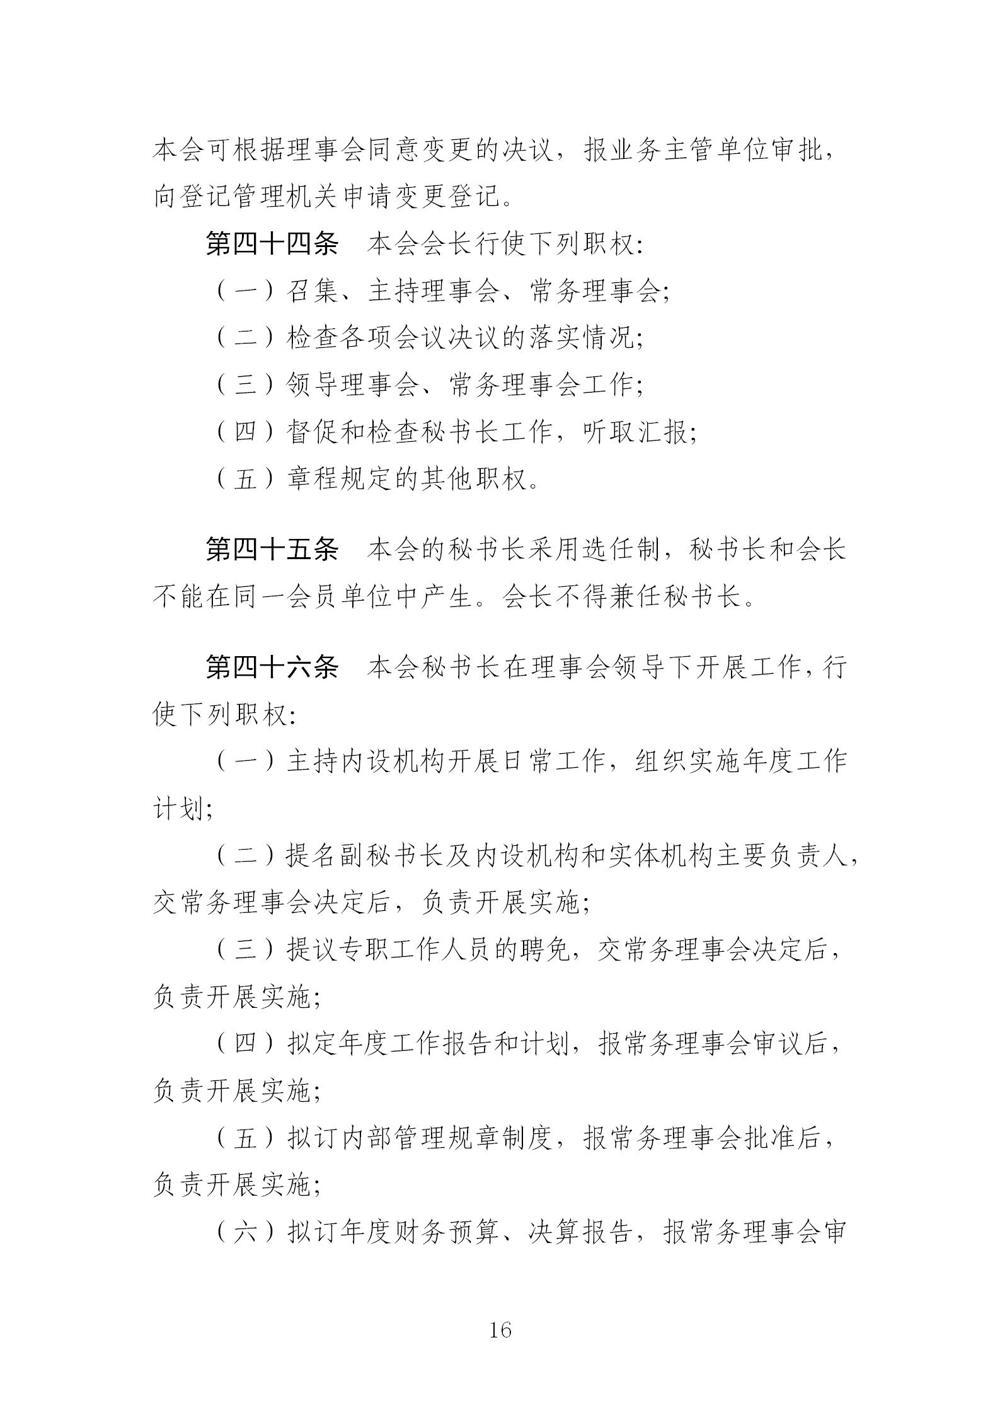 3-广东省羽毛球协会新章程20221107-根据民政厅修改意见修改_16